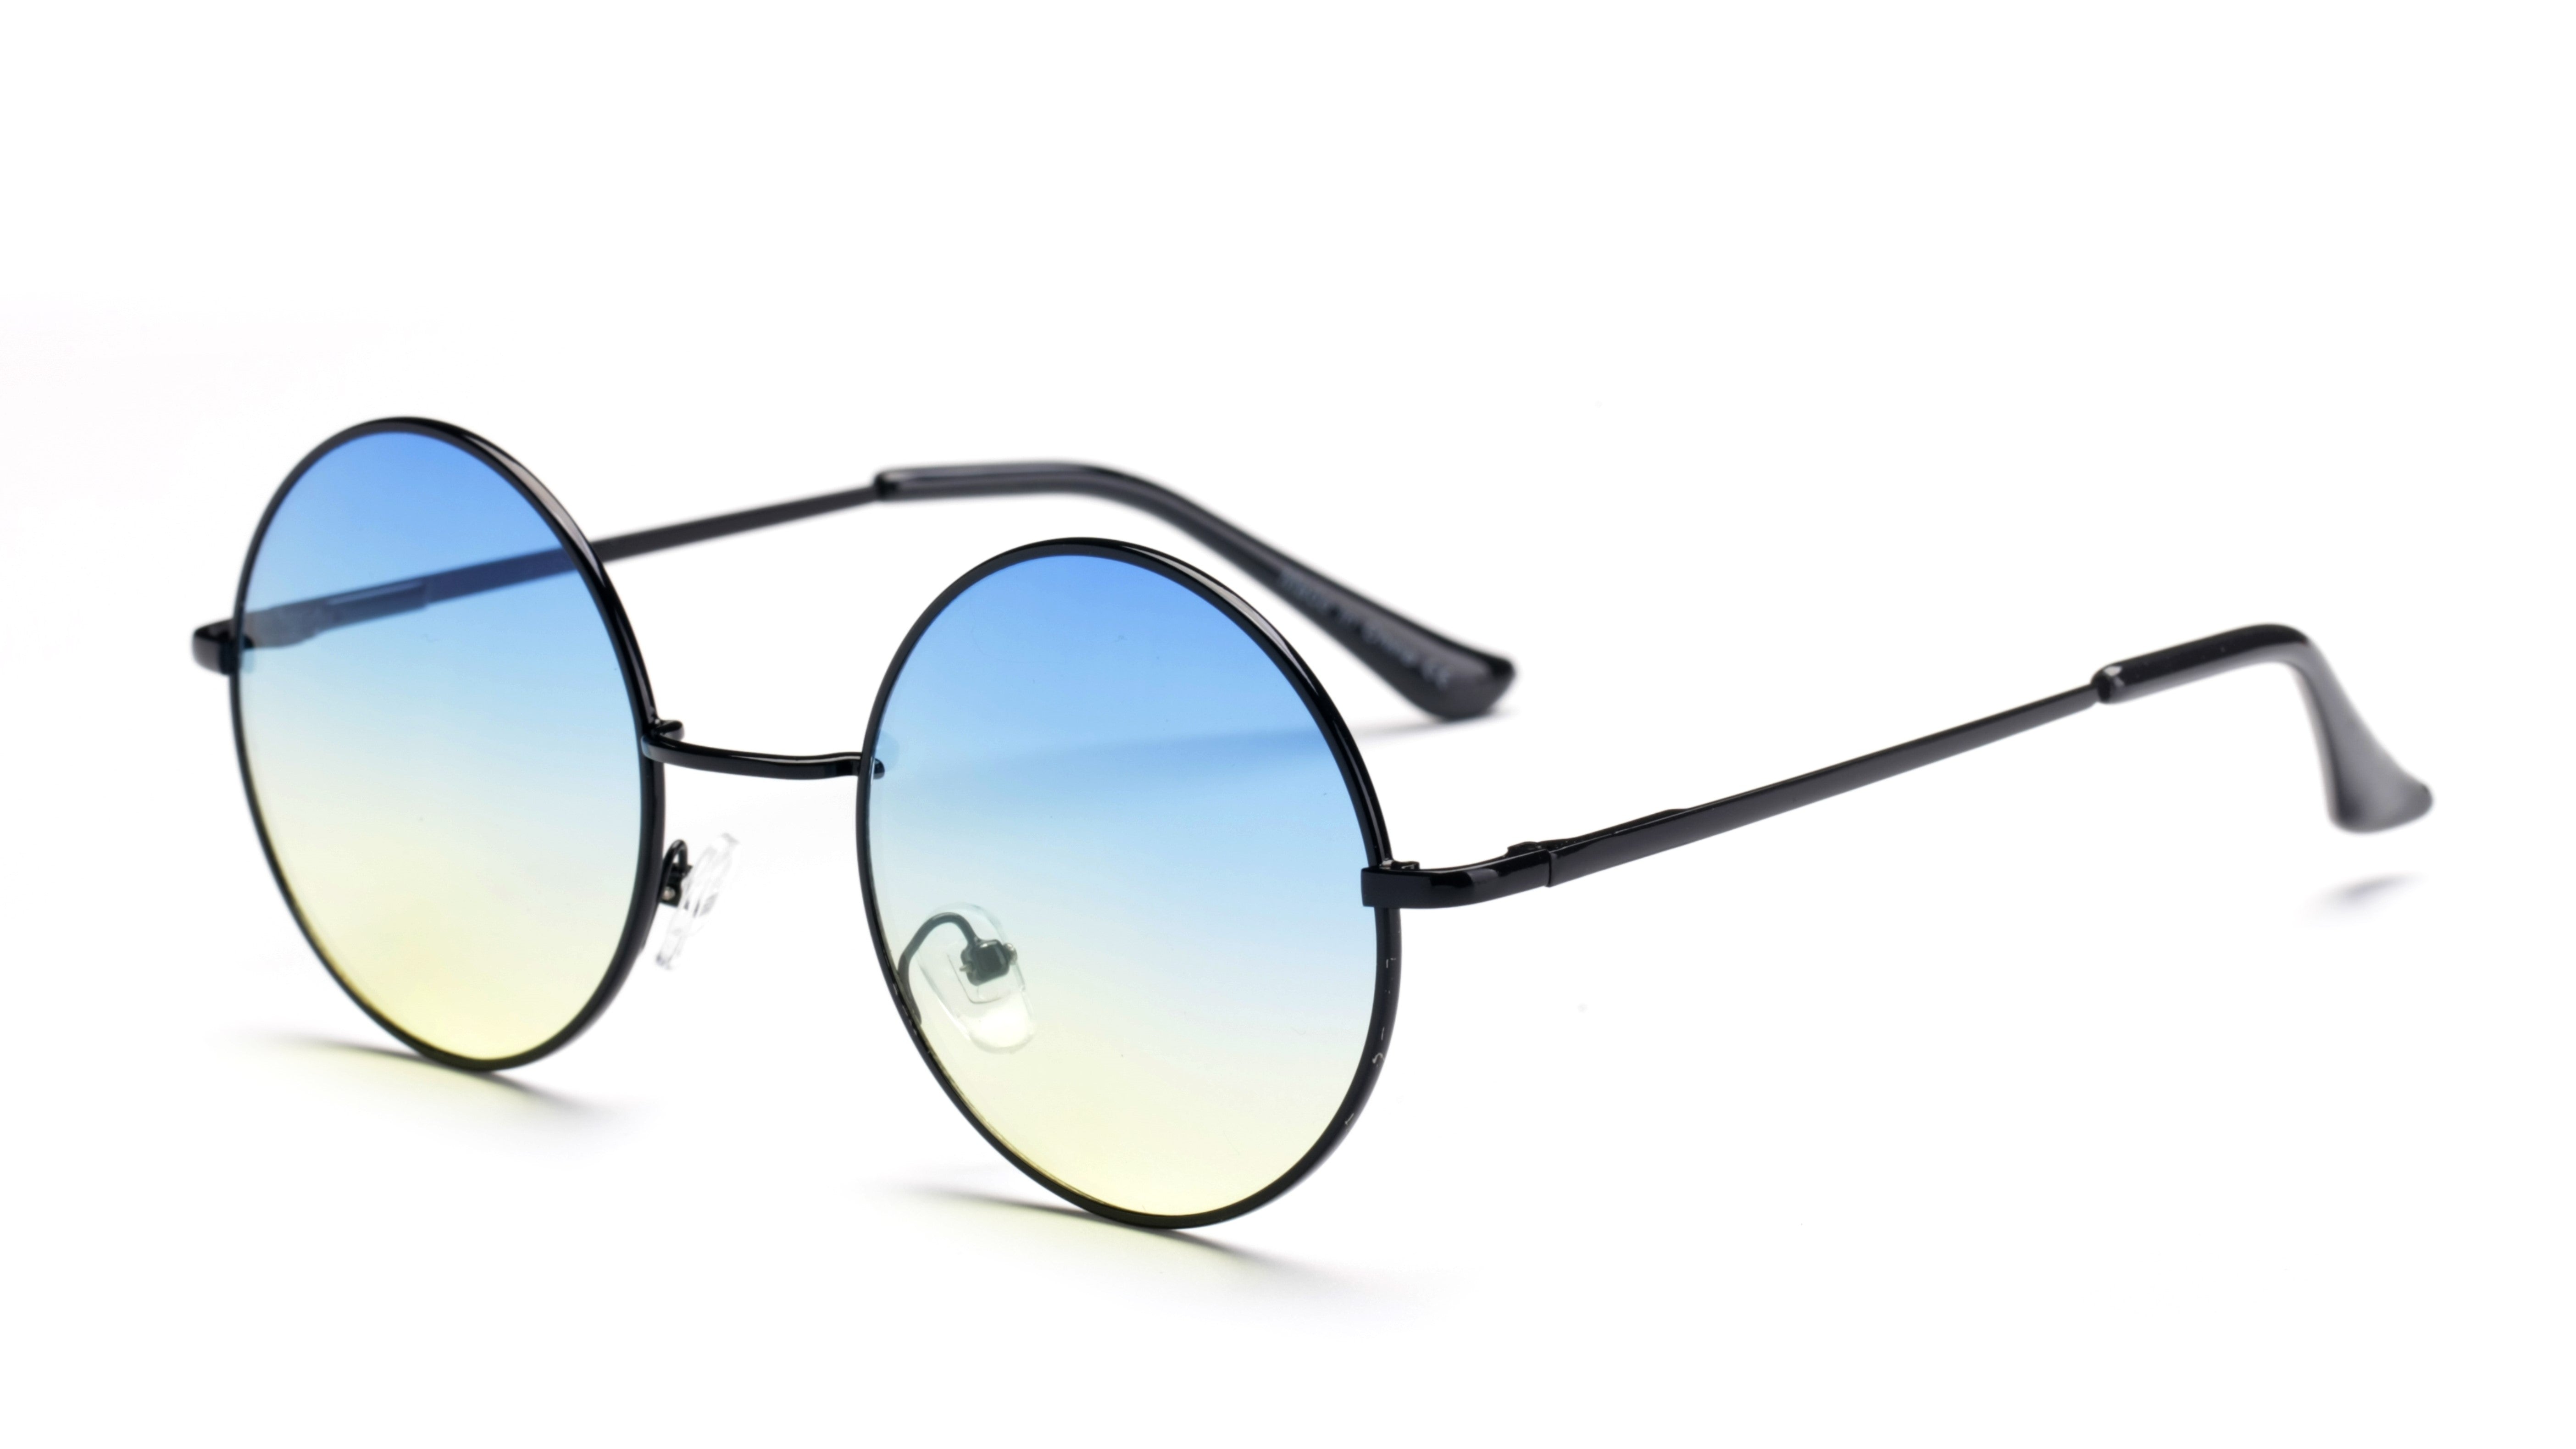 F1003-N - Retro Circle Round Metal Tinted Fashion Sunglasses Black/Blue